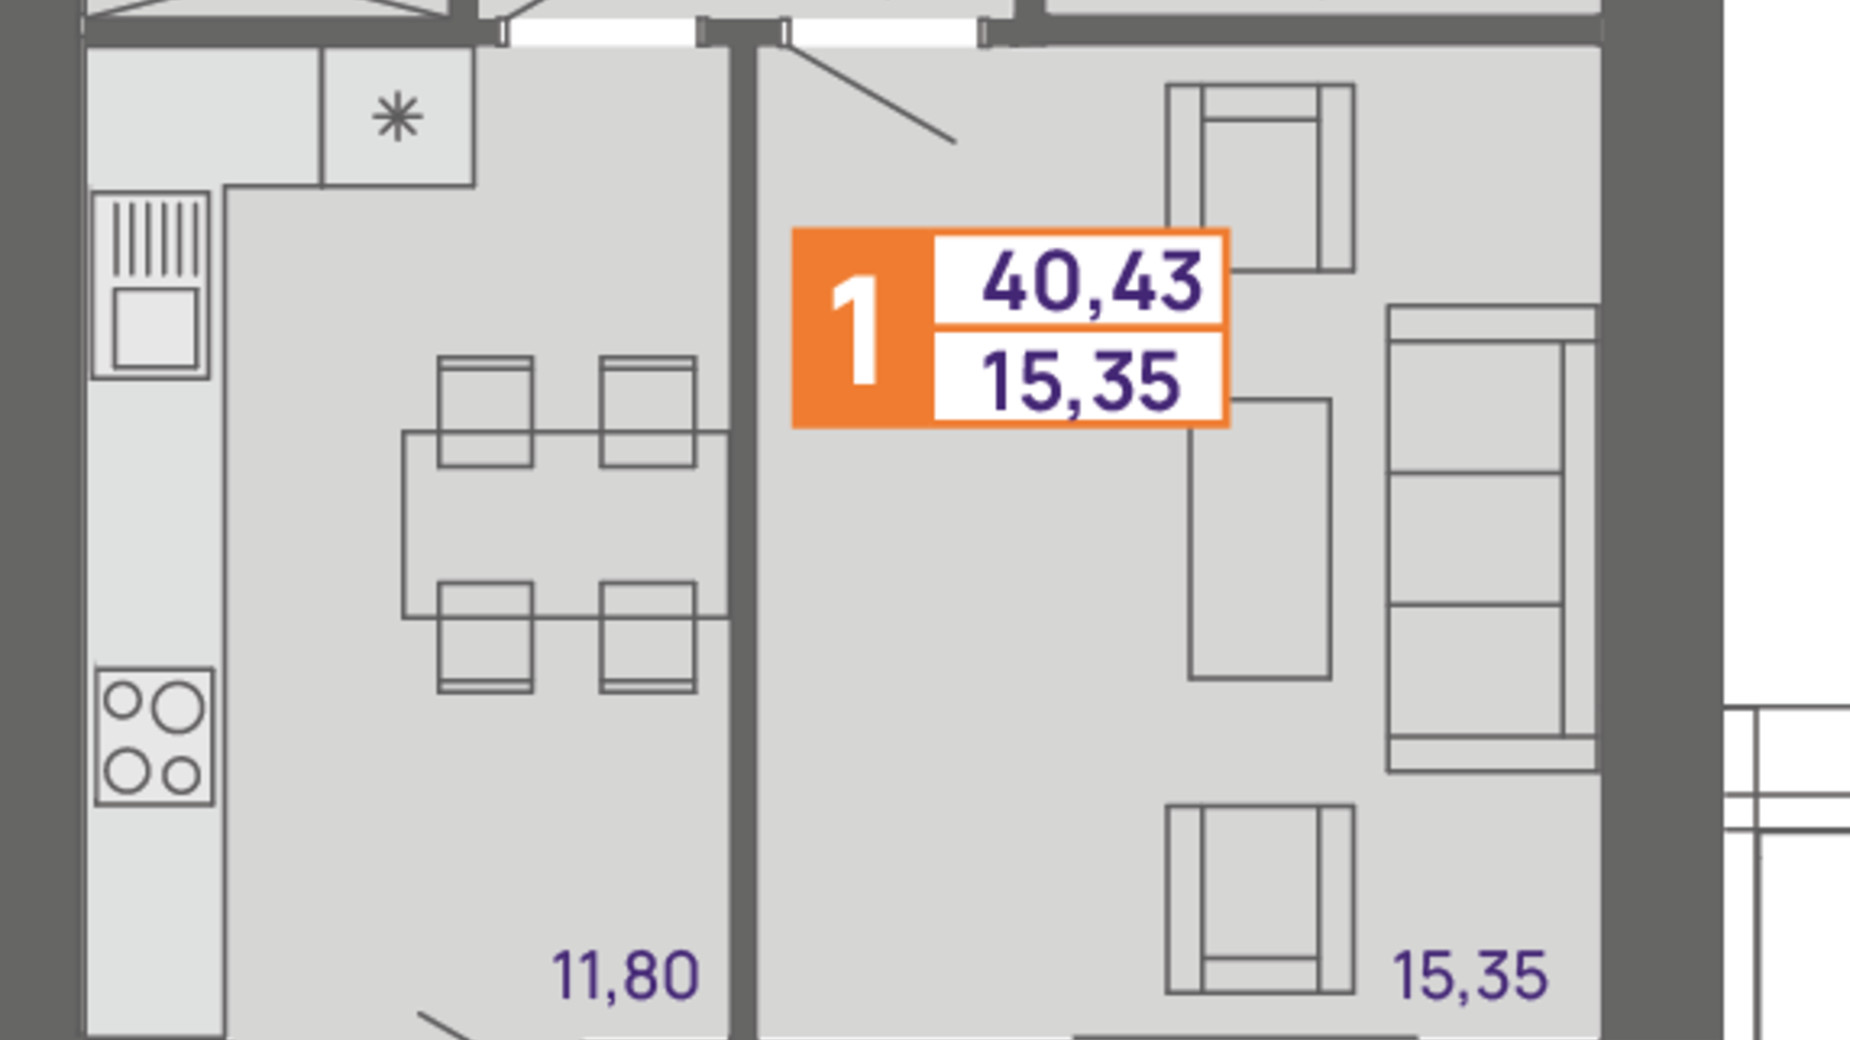 Планировка 1-комнатной квартиры в ЖК Молодежный 40.43 м², фото 300028